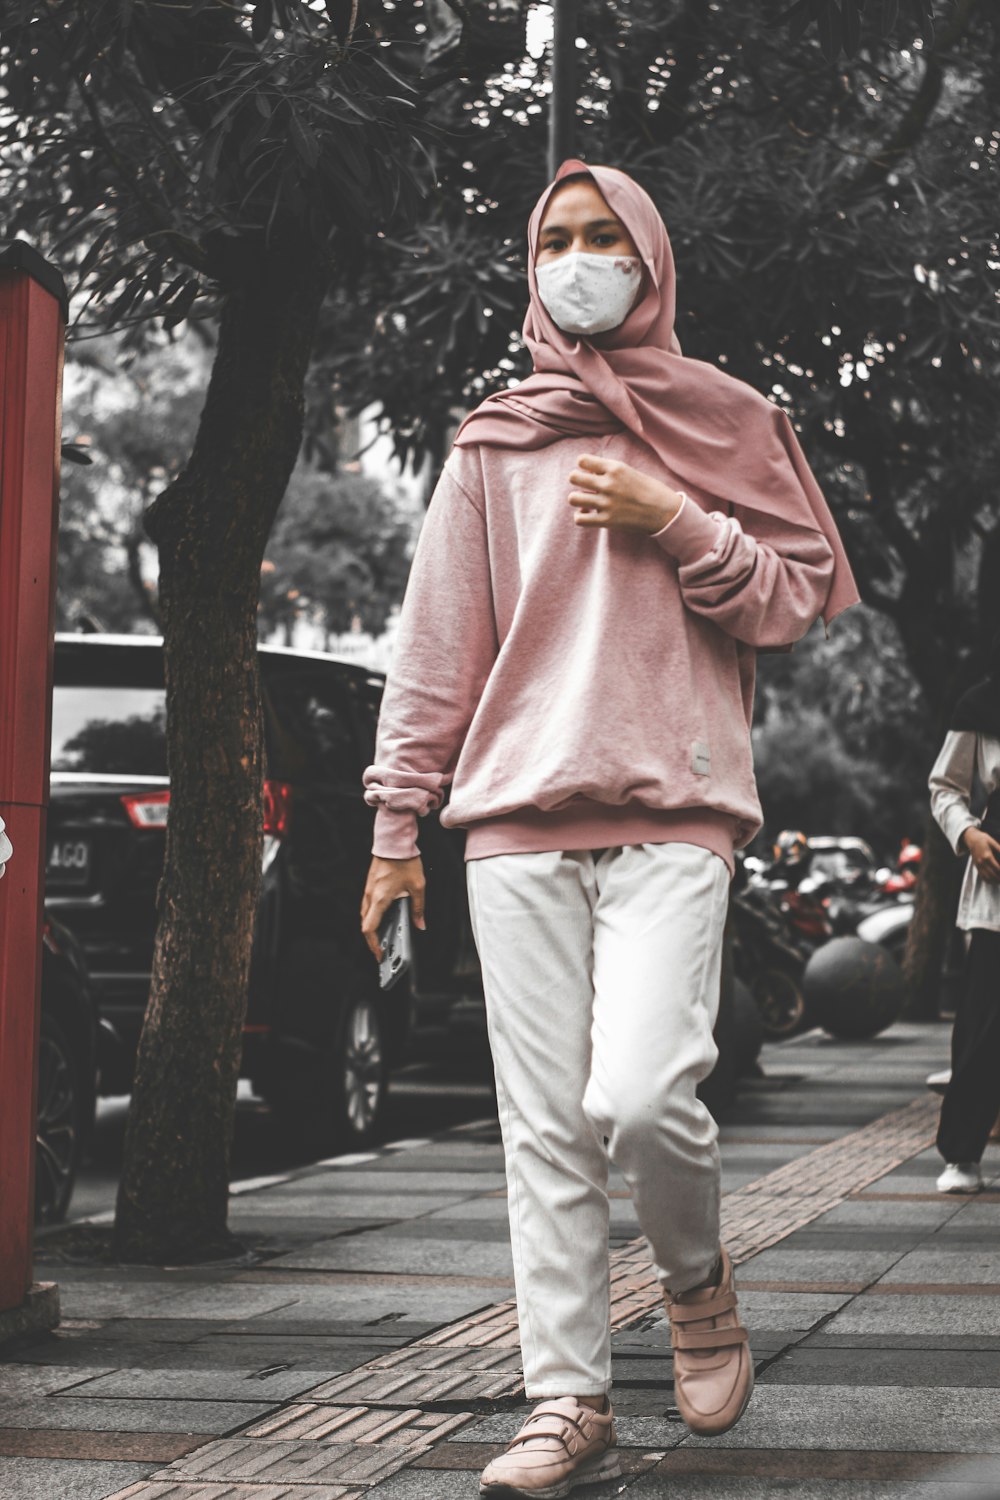 Mann in rosa Kapuzenpulli und grauer Hose, der tagsüber auf dem Bürgersteig steht